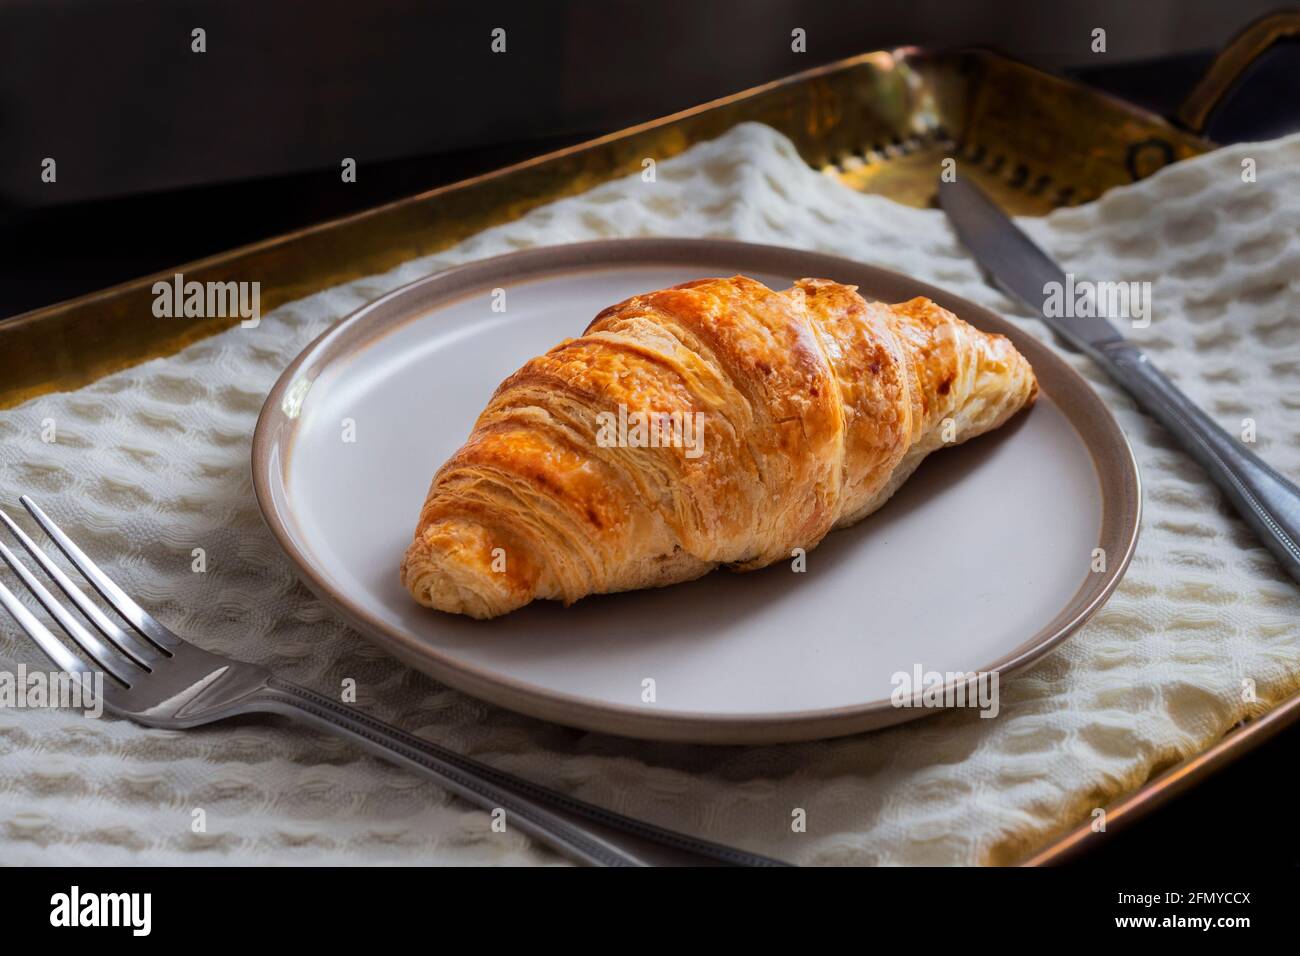 Fotografia del delizioso croissant con burro, parte della collezione di fotografia alimentare. Foto Stock